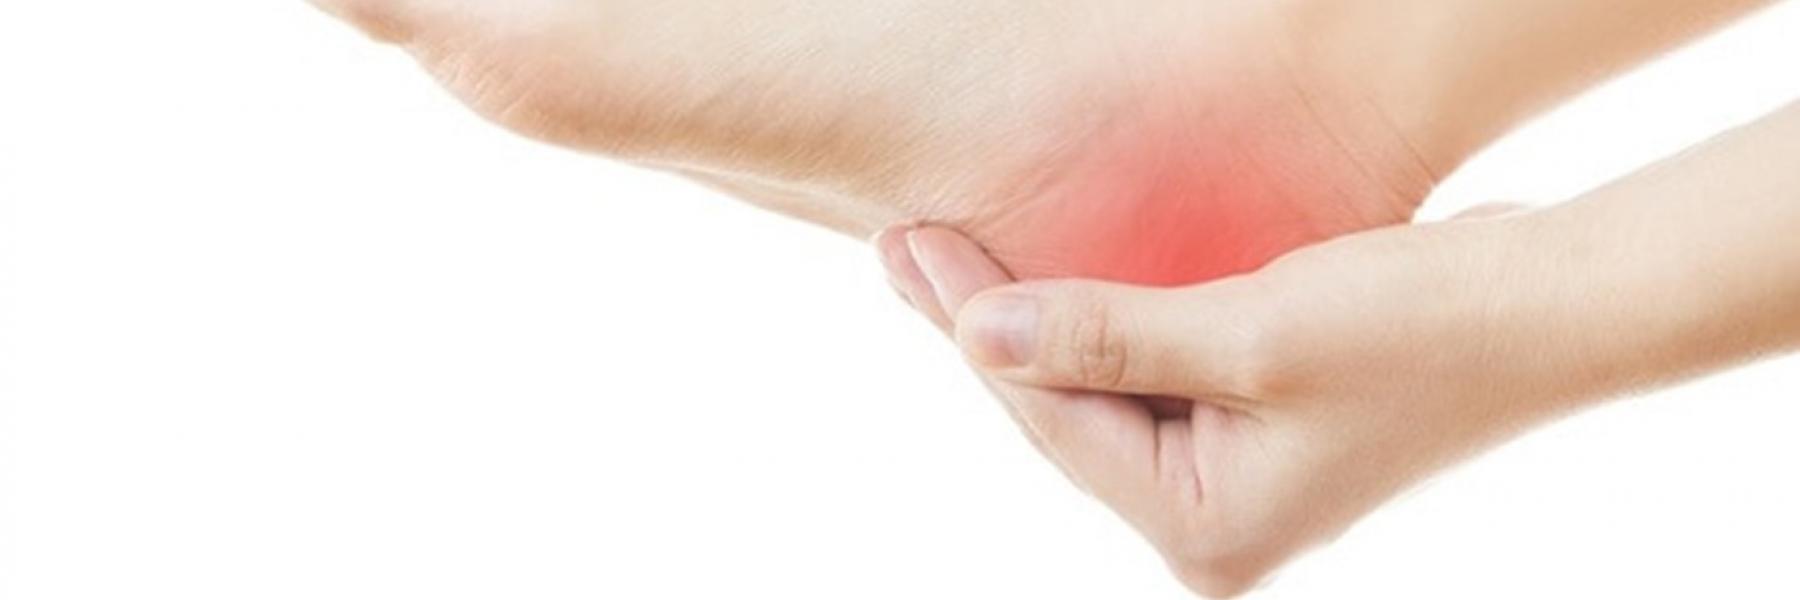 5 علاجات منزلية لعلاج مسمار القدم